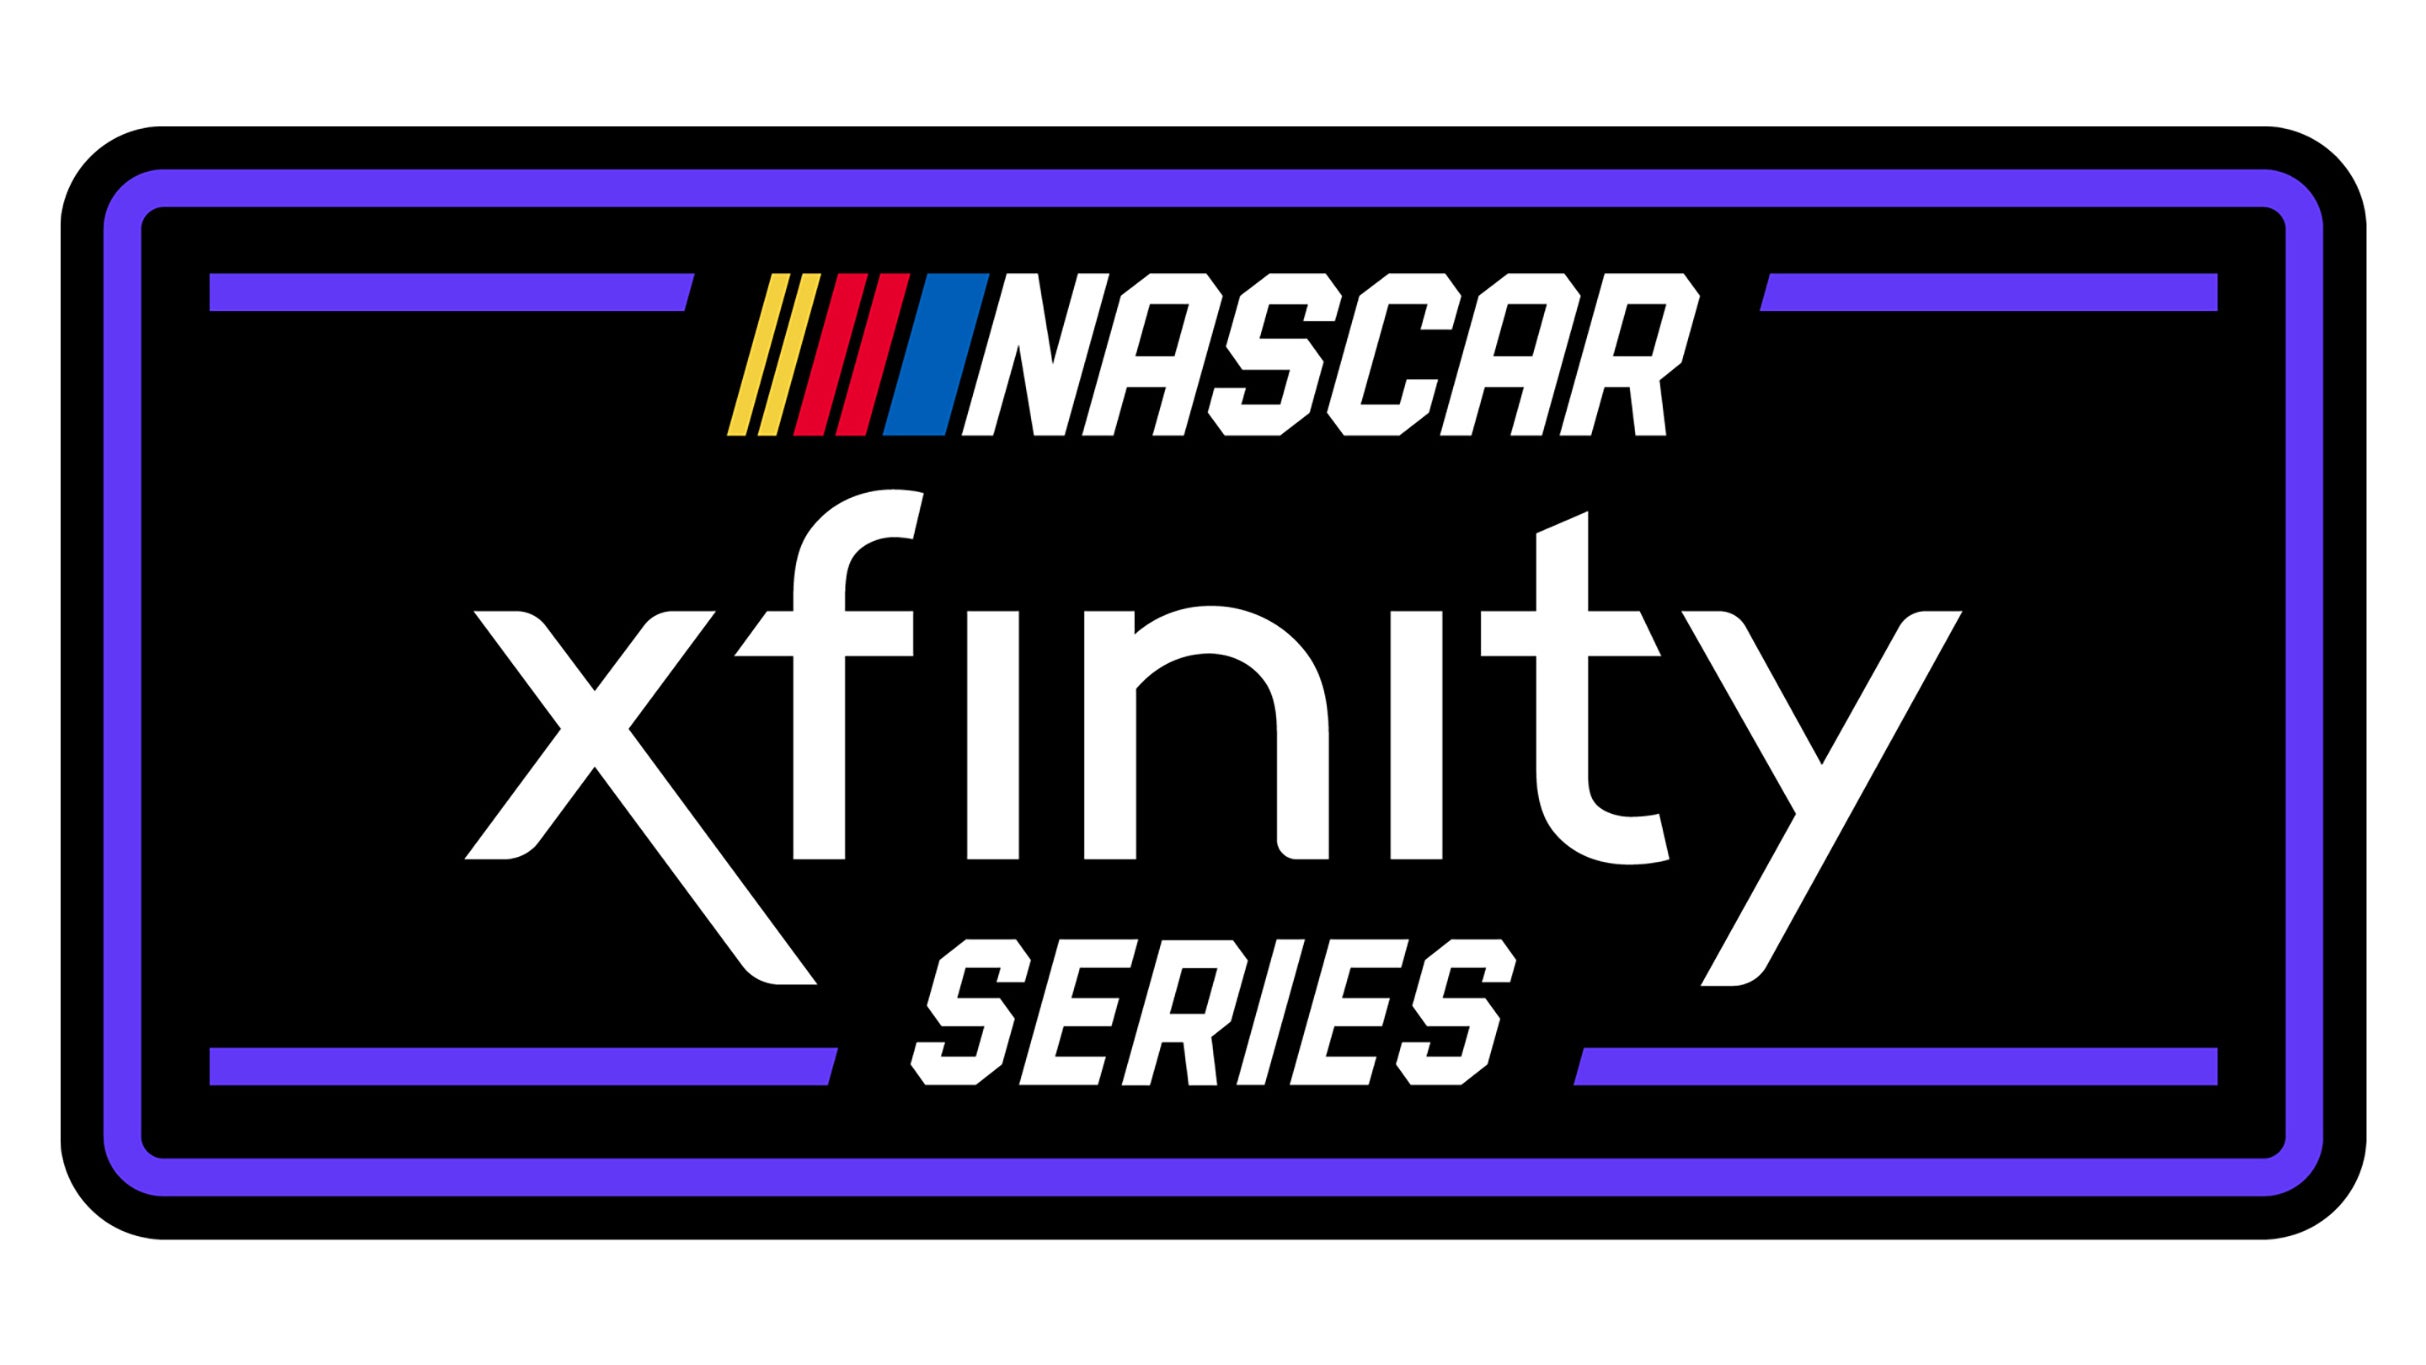 NASCAR Xfinity Series Race at Iowa Speedway